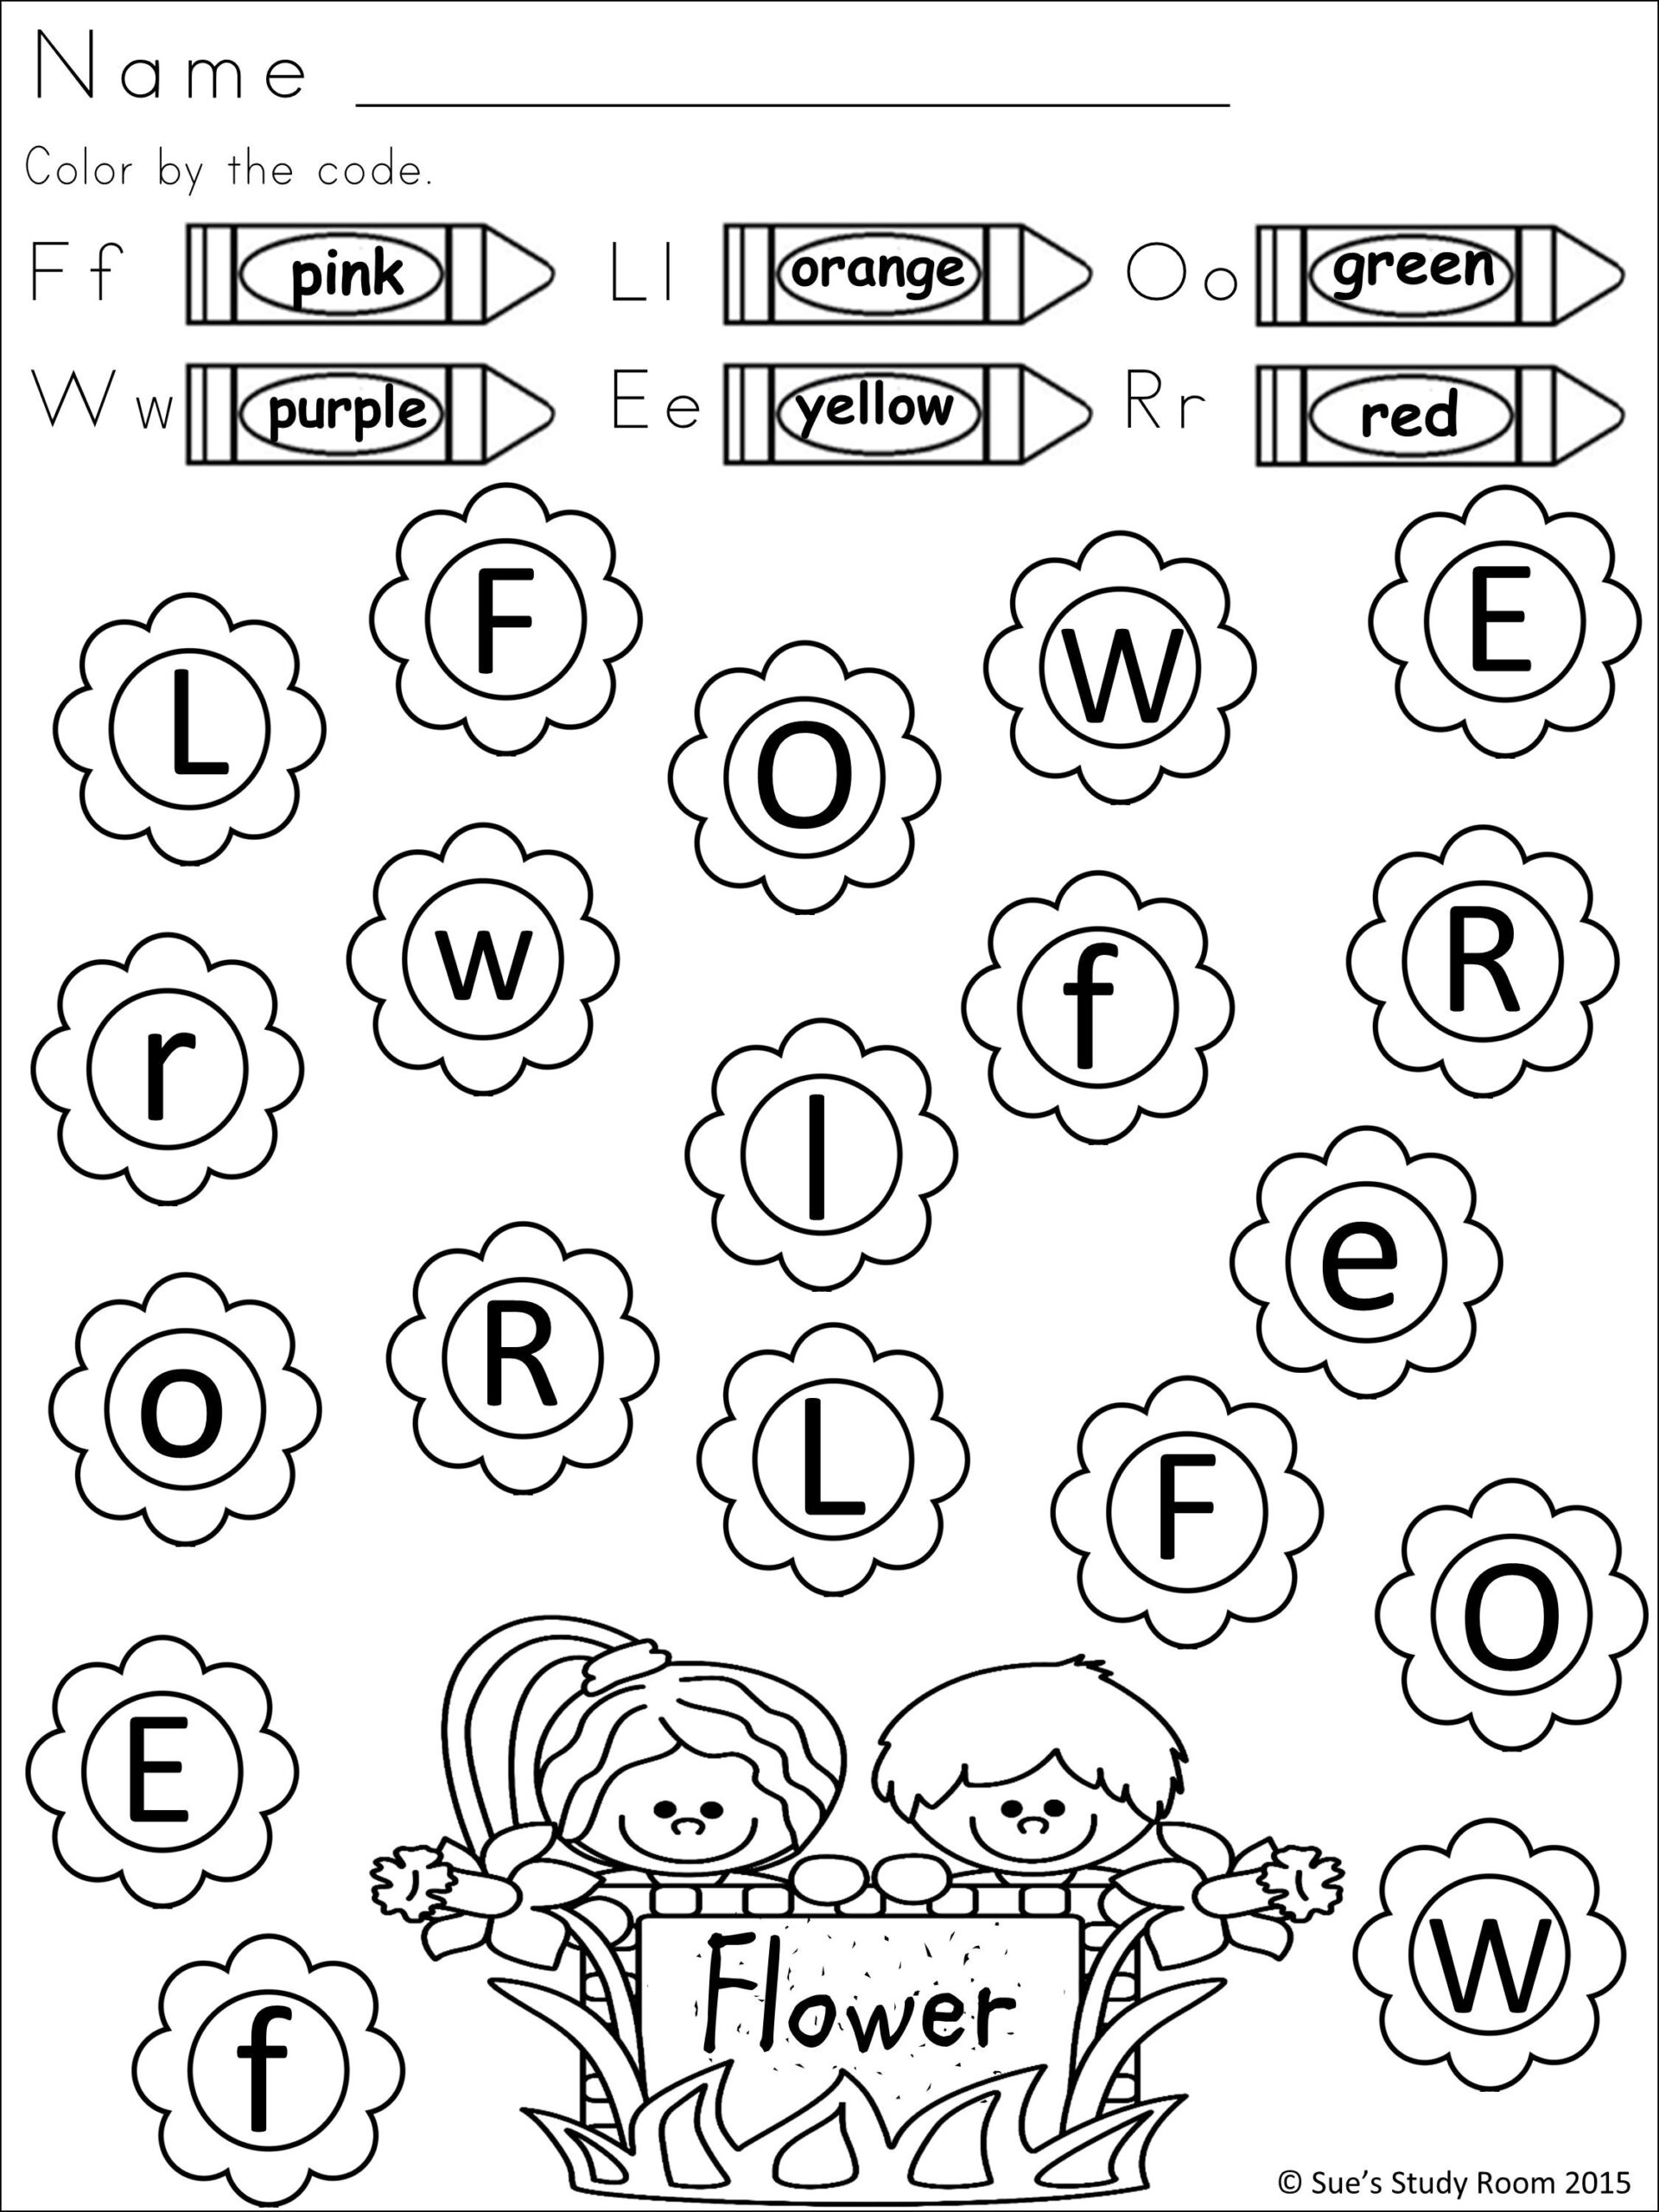 printable-color-recognition-worksheets-for-preschool-and-kindergarten